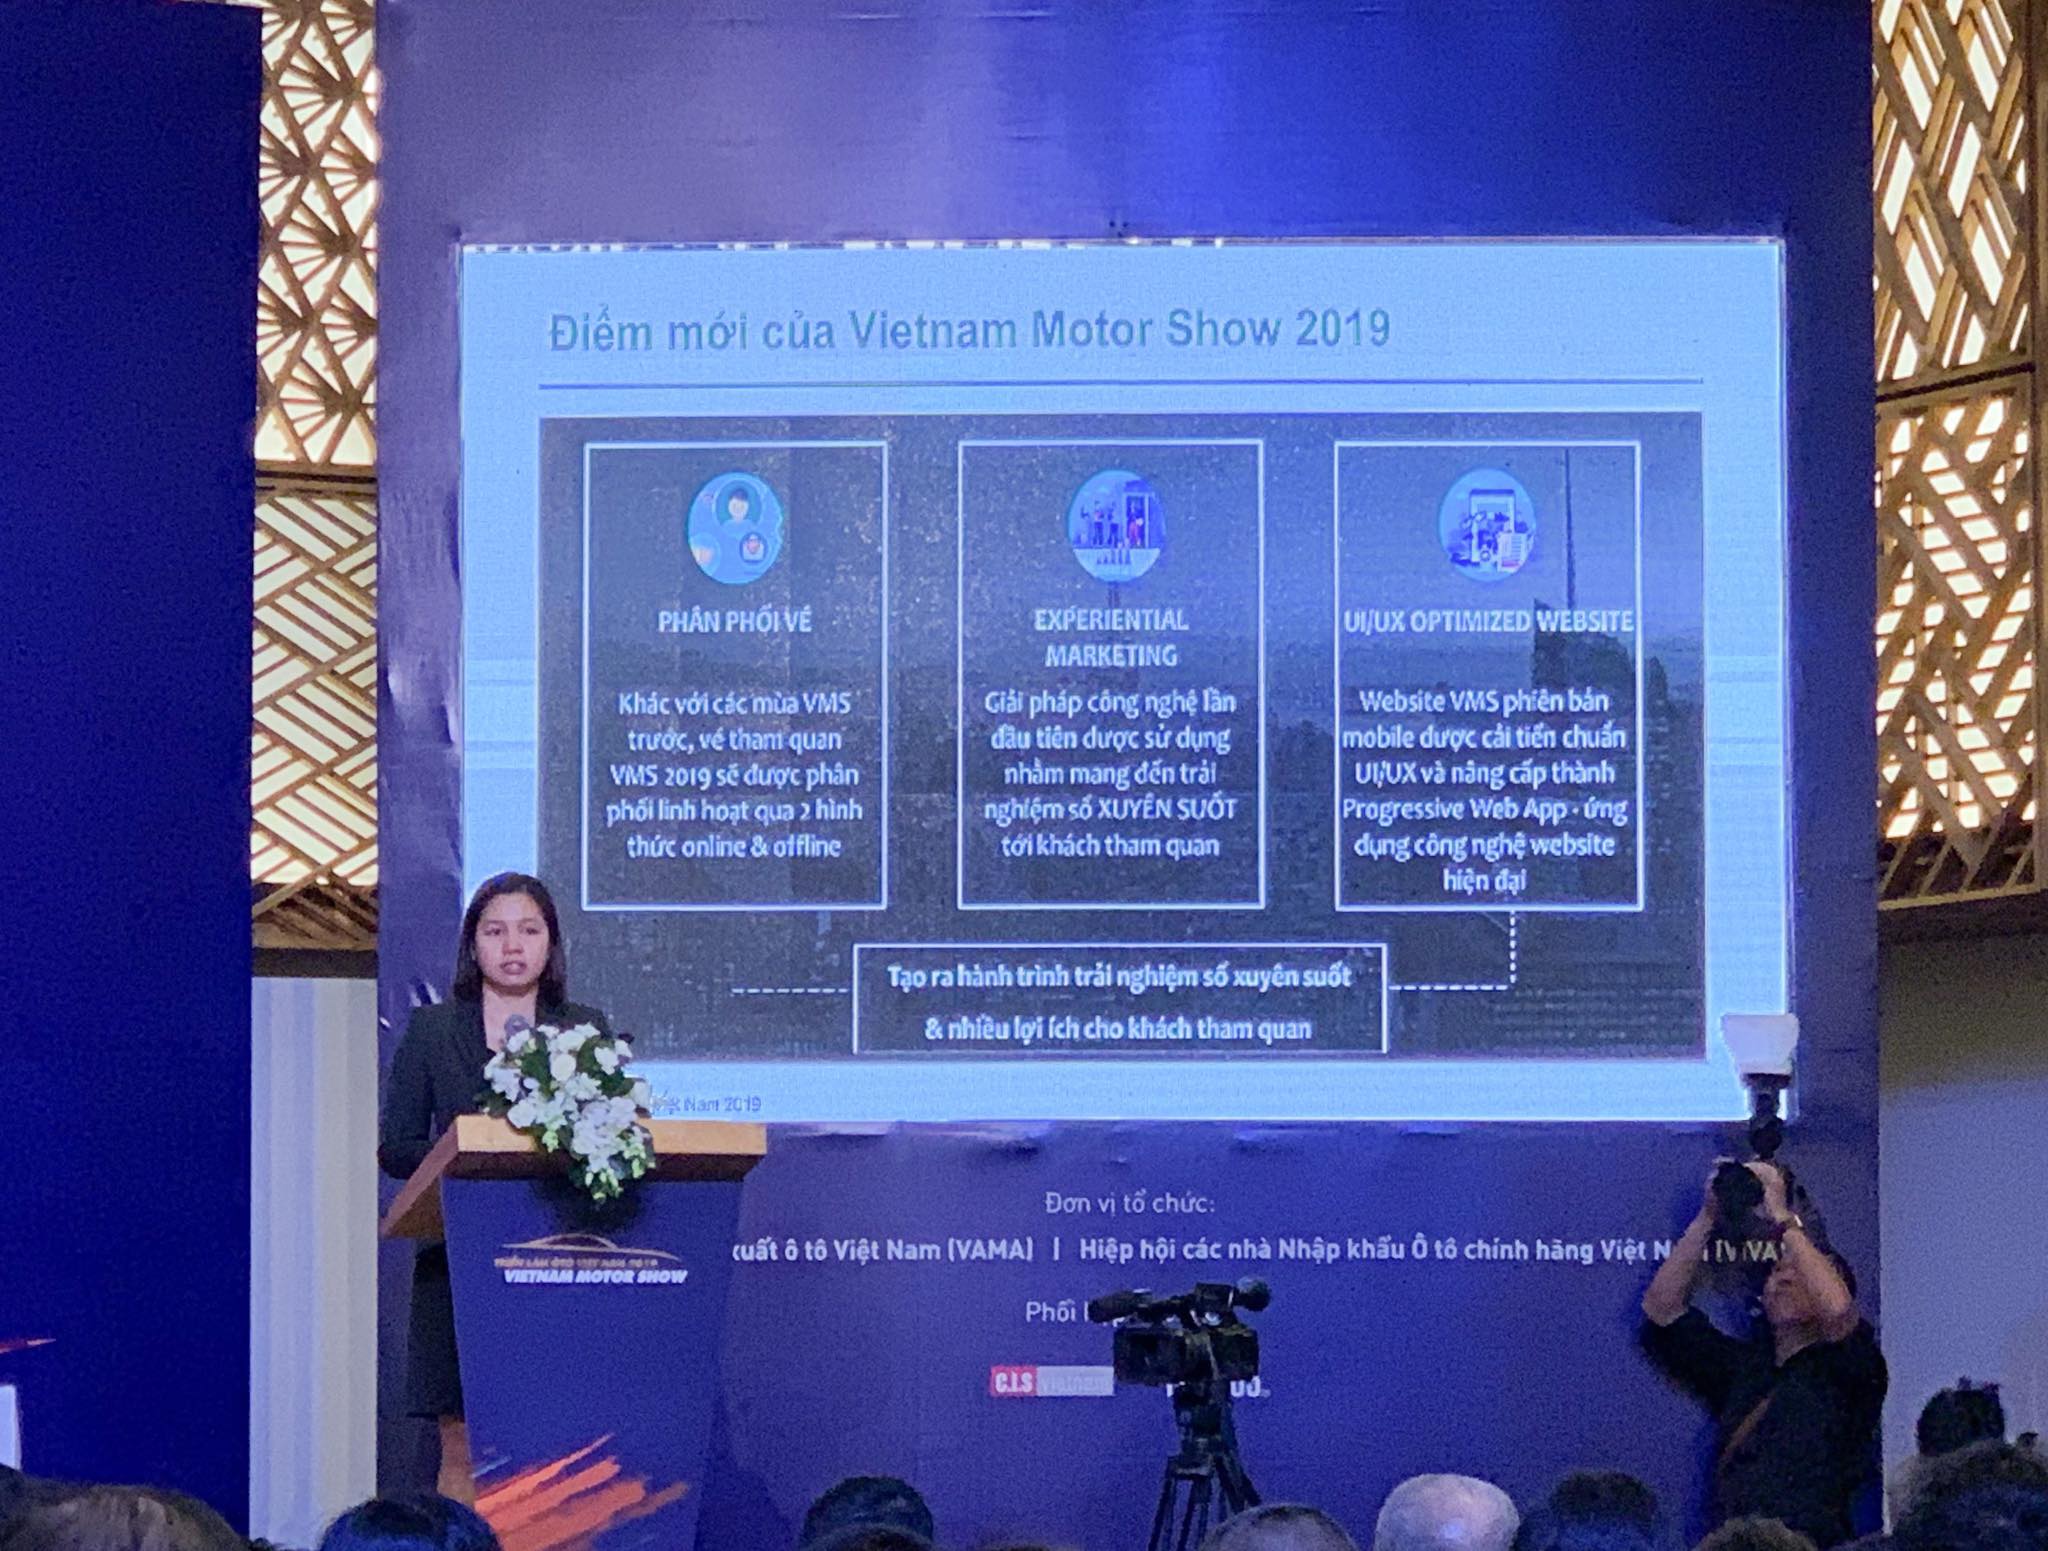 Triển lãm ô tô Việt Nam 2019 kỳ vọng tạo ra đột phá mùa cuối năm